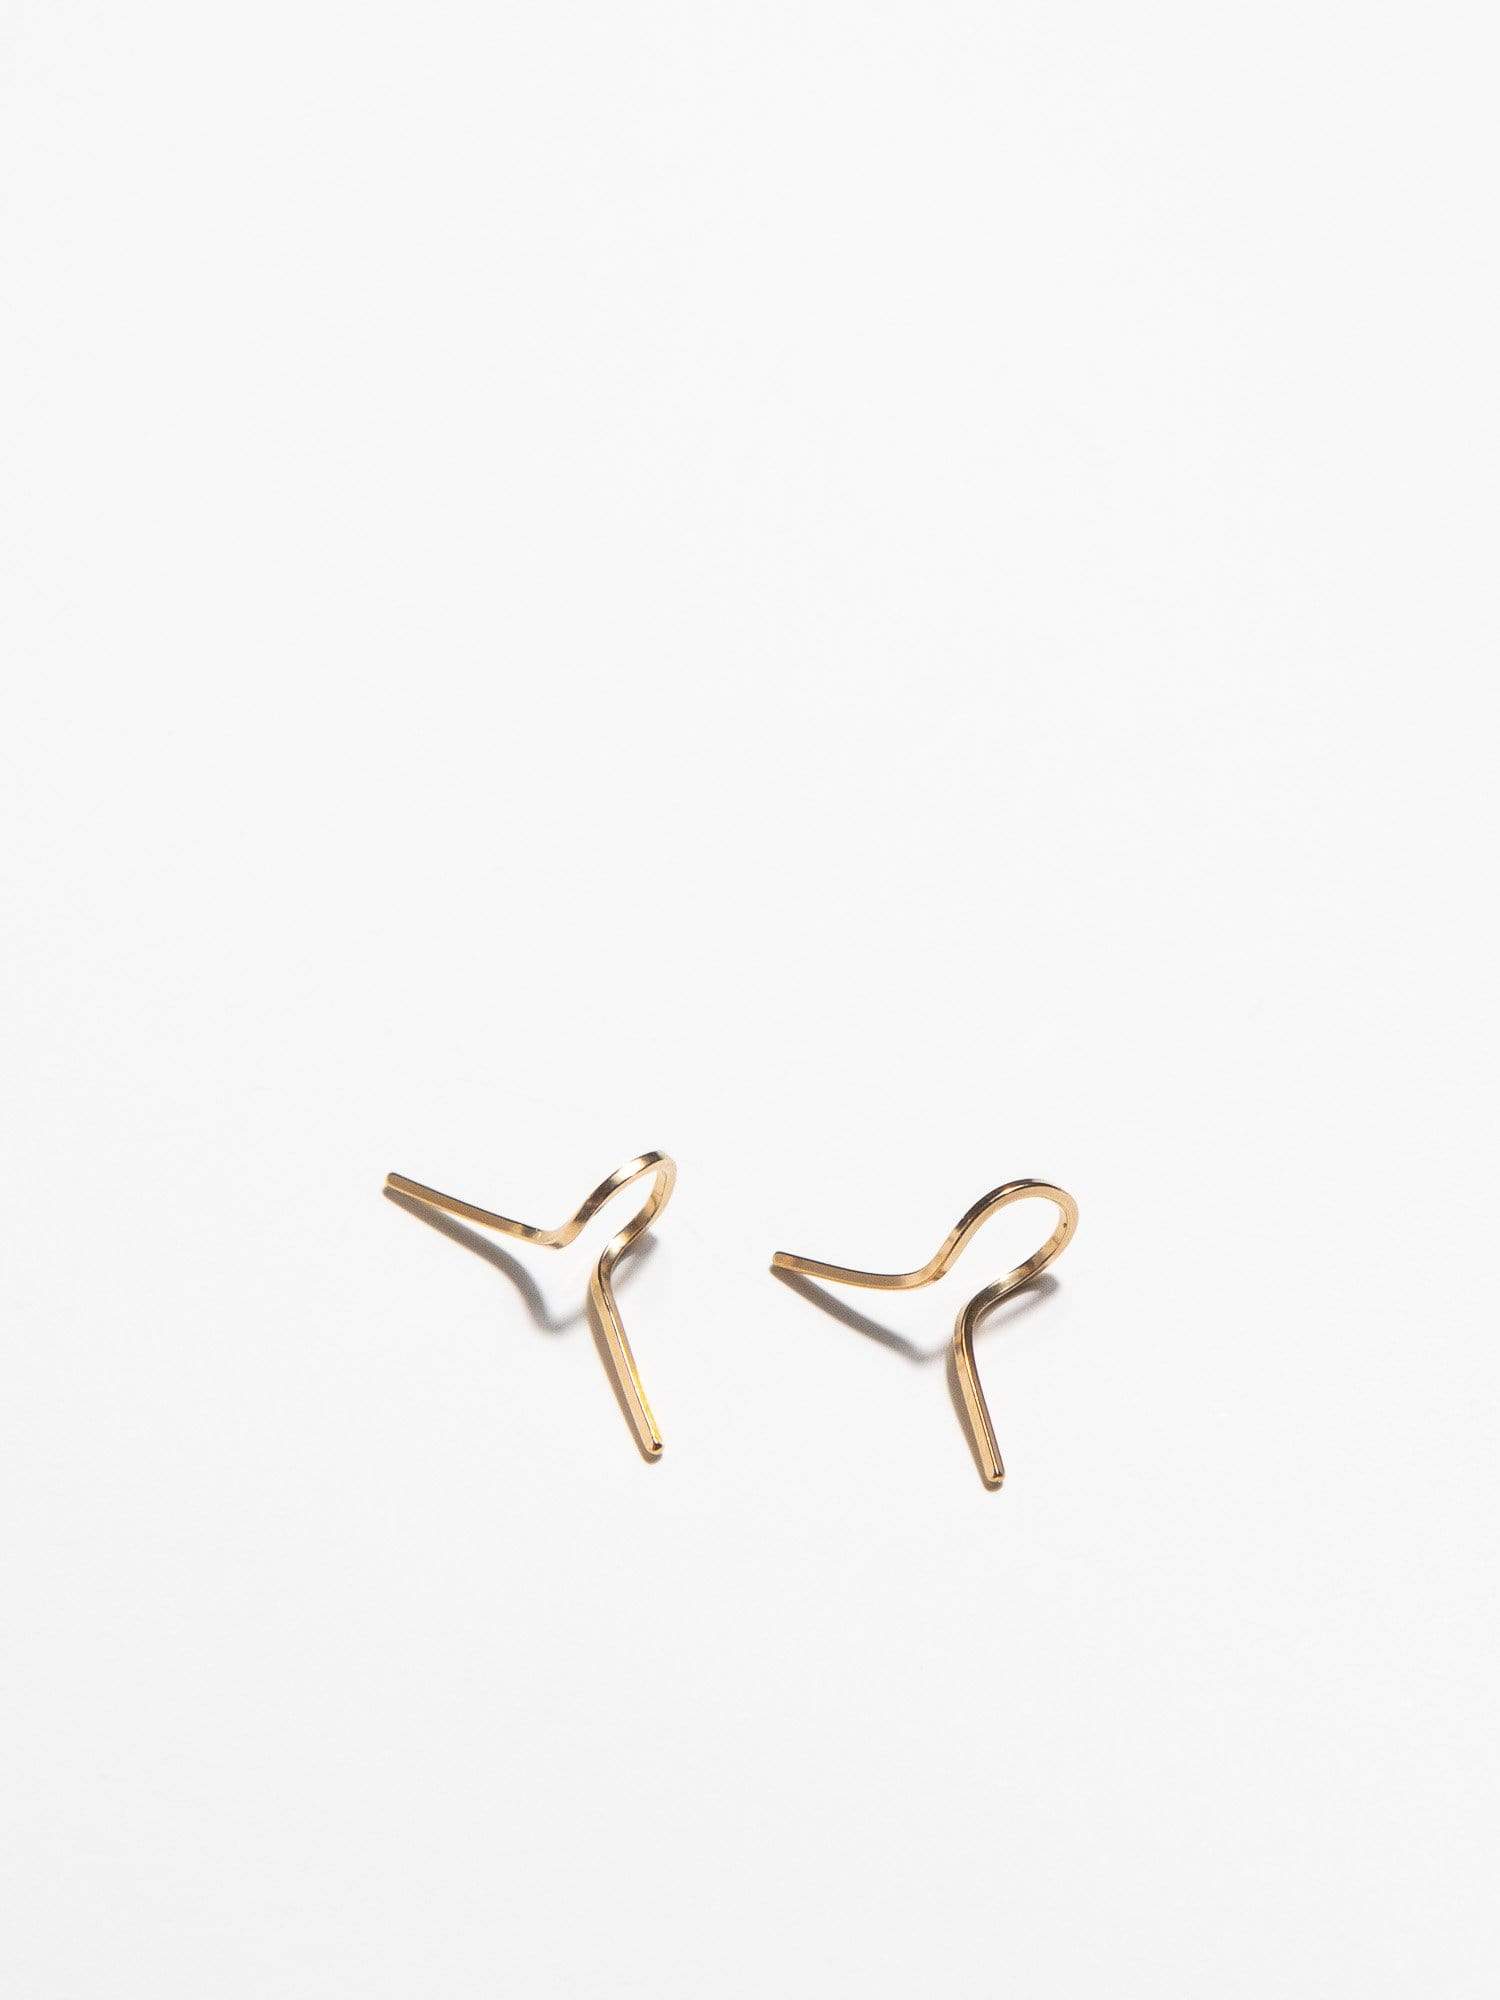 OXBStudio Earrings Gold Filled Twist Tie